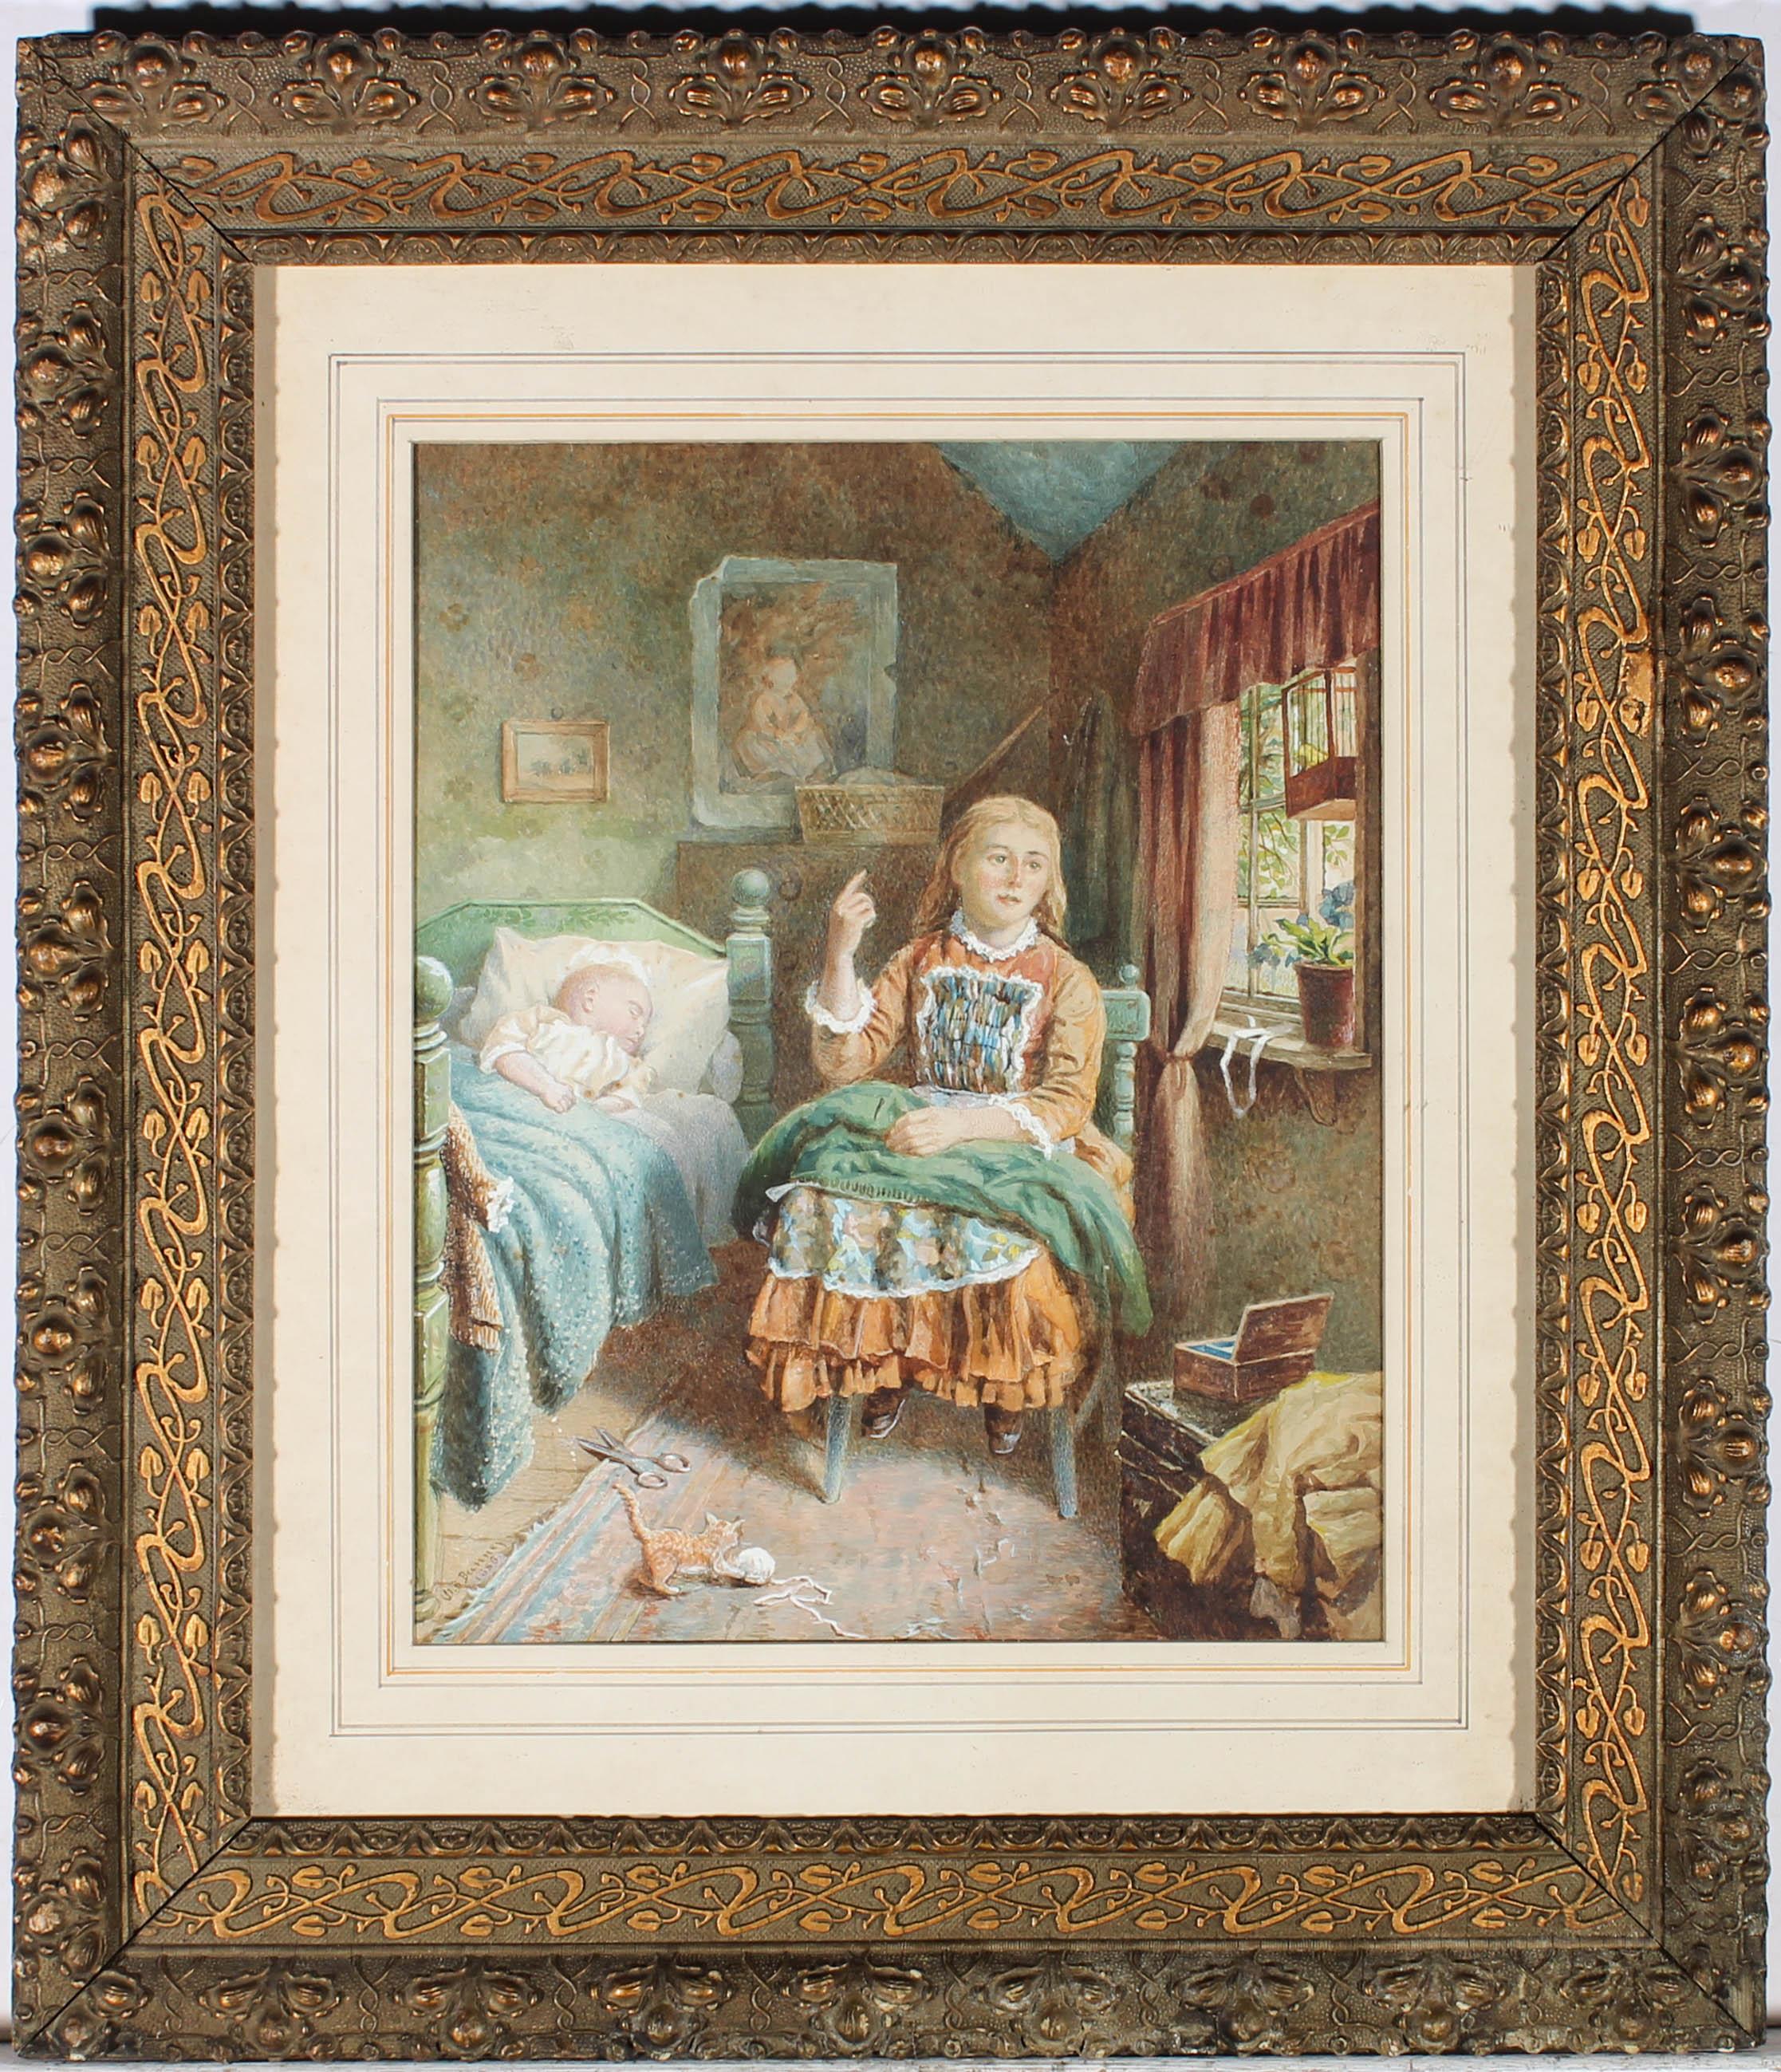 Une charmante scène d'intérieur victorienne en aquarelle montrant une jeune fille assise sur une chaise en bois avec une couverture verte sur ses genoux tandis qu'un bébé dort dans un lit à ses côtés. Le soleil brille par une fenêtre ouverte et un